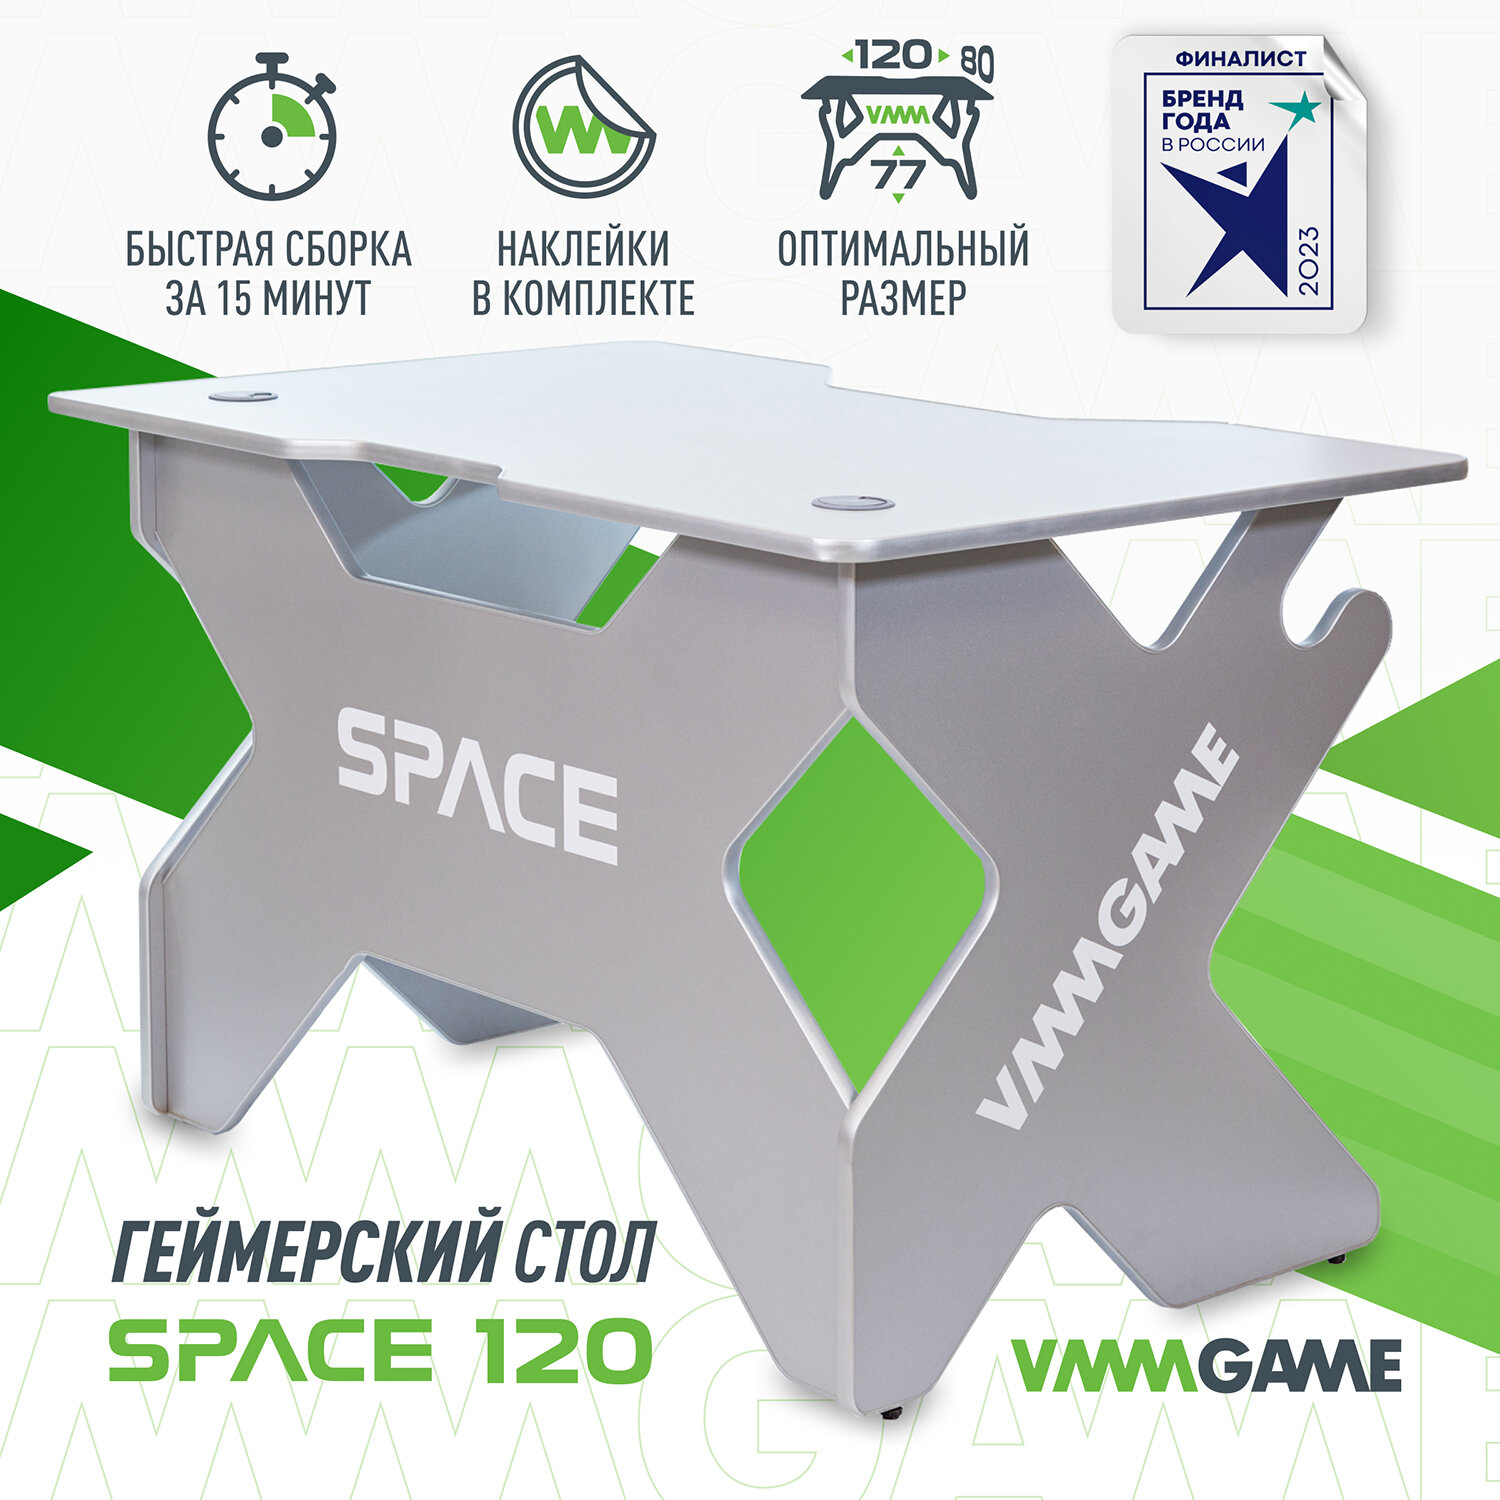 Игровой компьютерный стол VMMGAME SPACE LUNAR